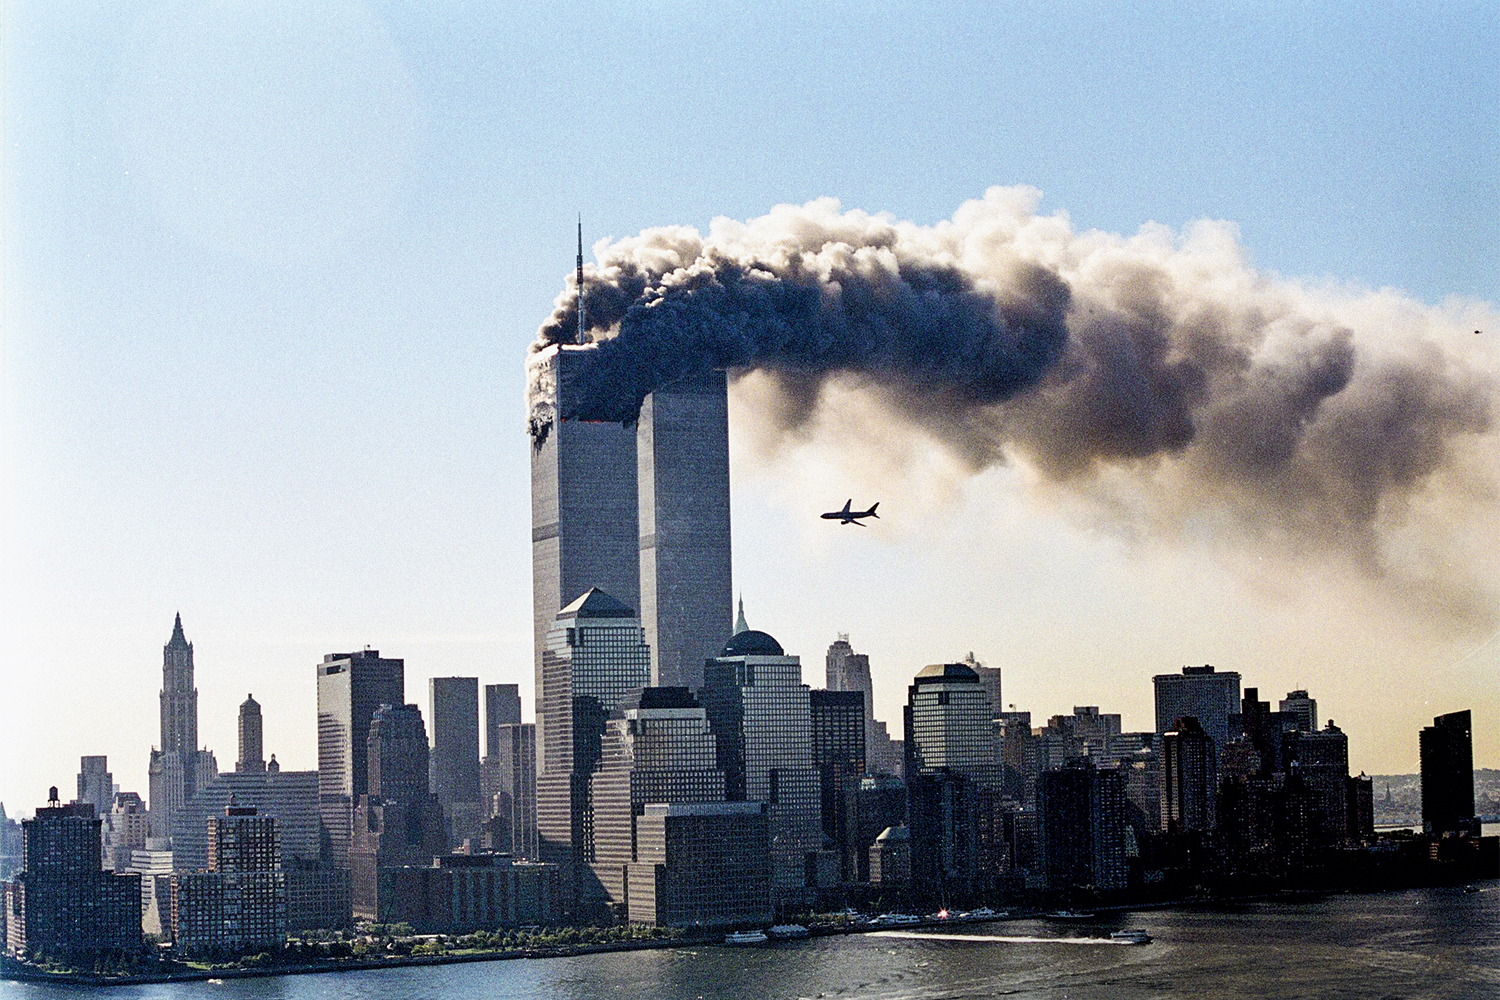 9 11 game. ВТЦ Нью-Йорк 2001. Башни-Близнецы 11 сентября 2001. 11 Сентября 2001 года башни Близнецы.